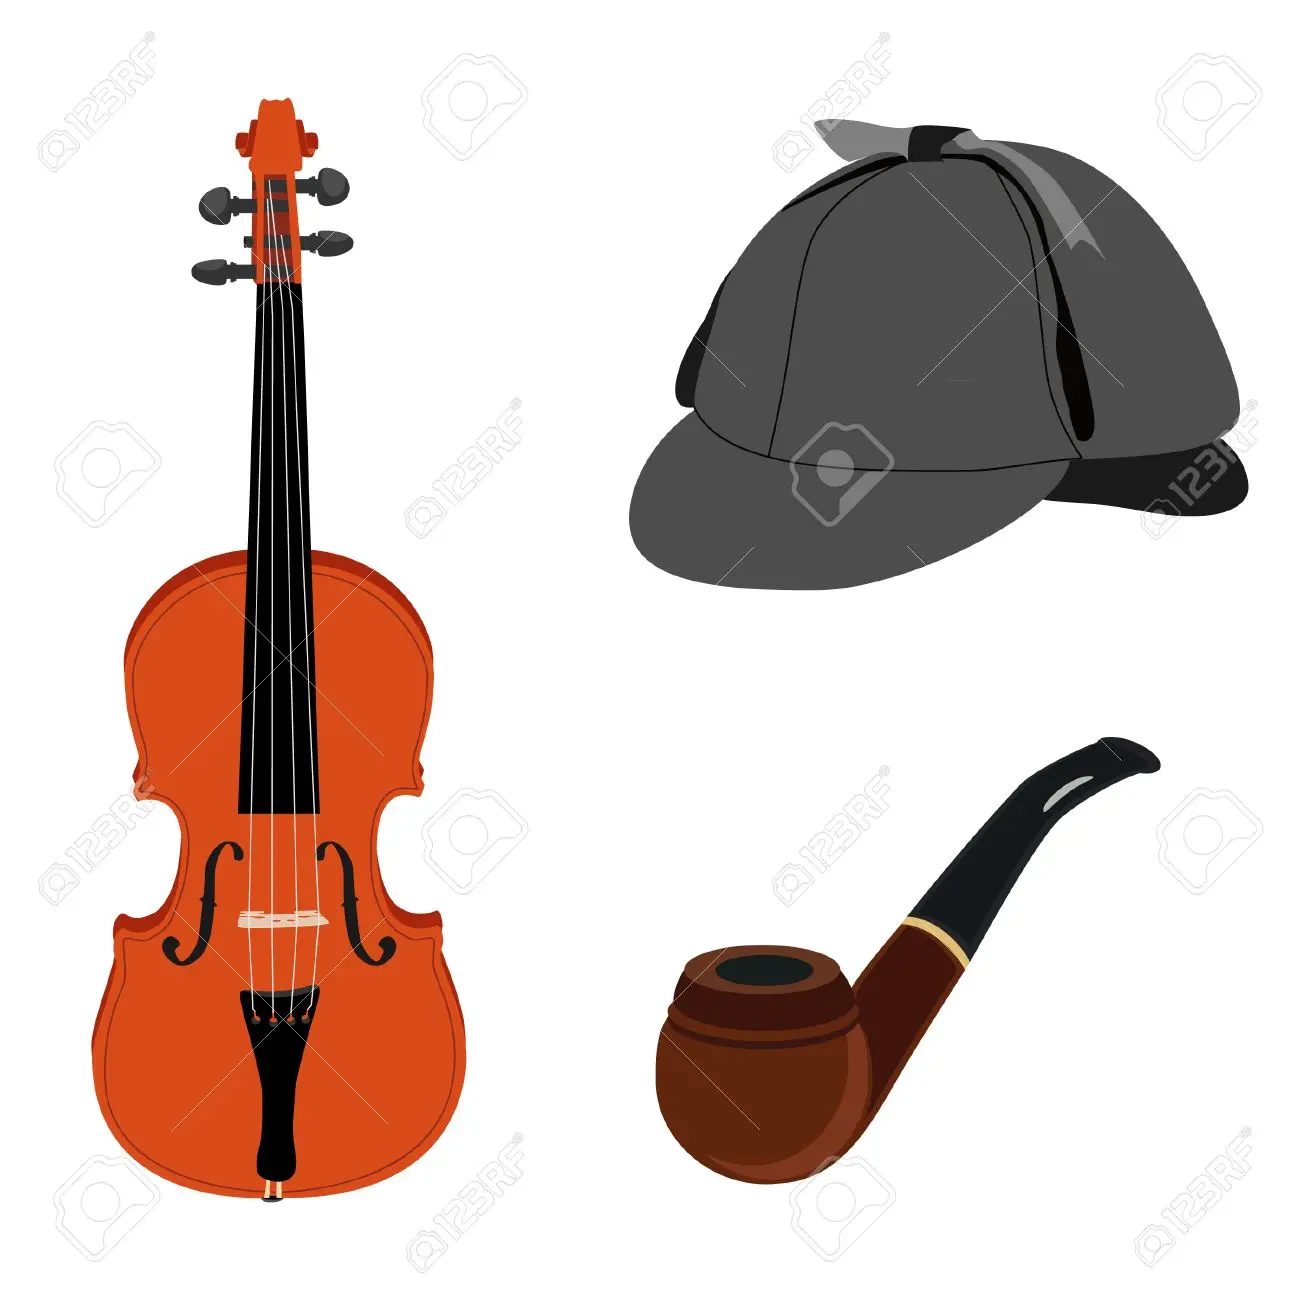 violin and pipe holmes - How good was Sherlock Holmes at violin